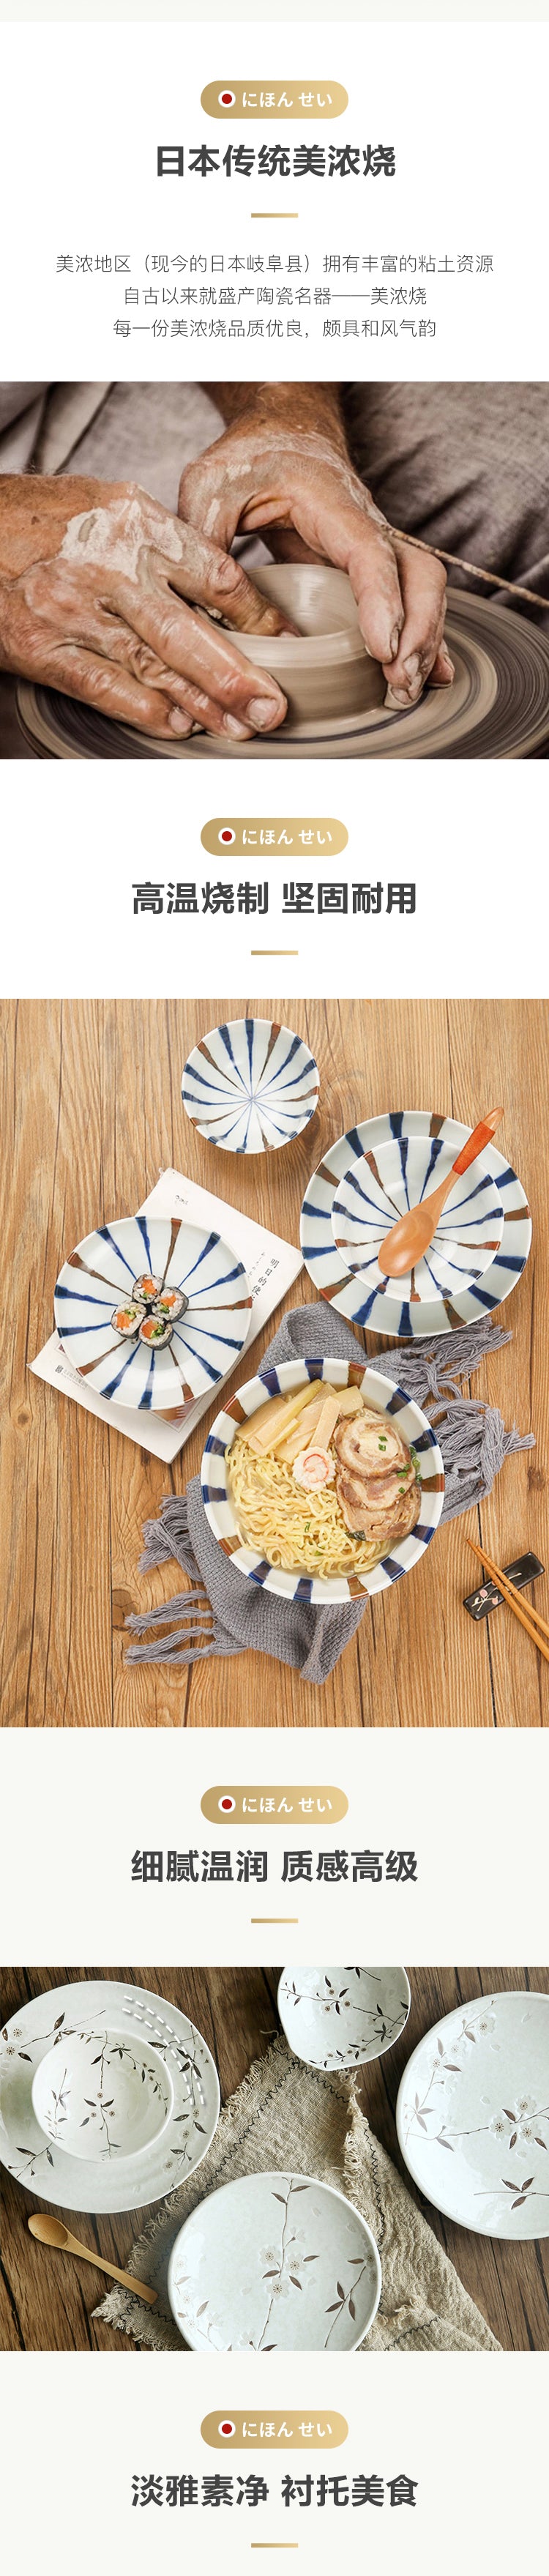 【美仓发货5-7日达】网易严选 日本制造 蓝十草餐具6件套 日式餐具 2人食